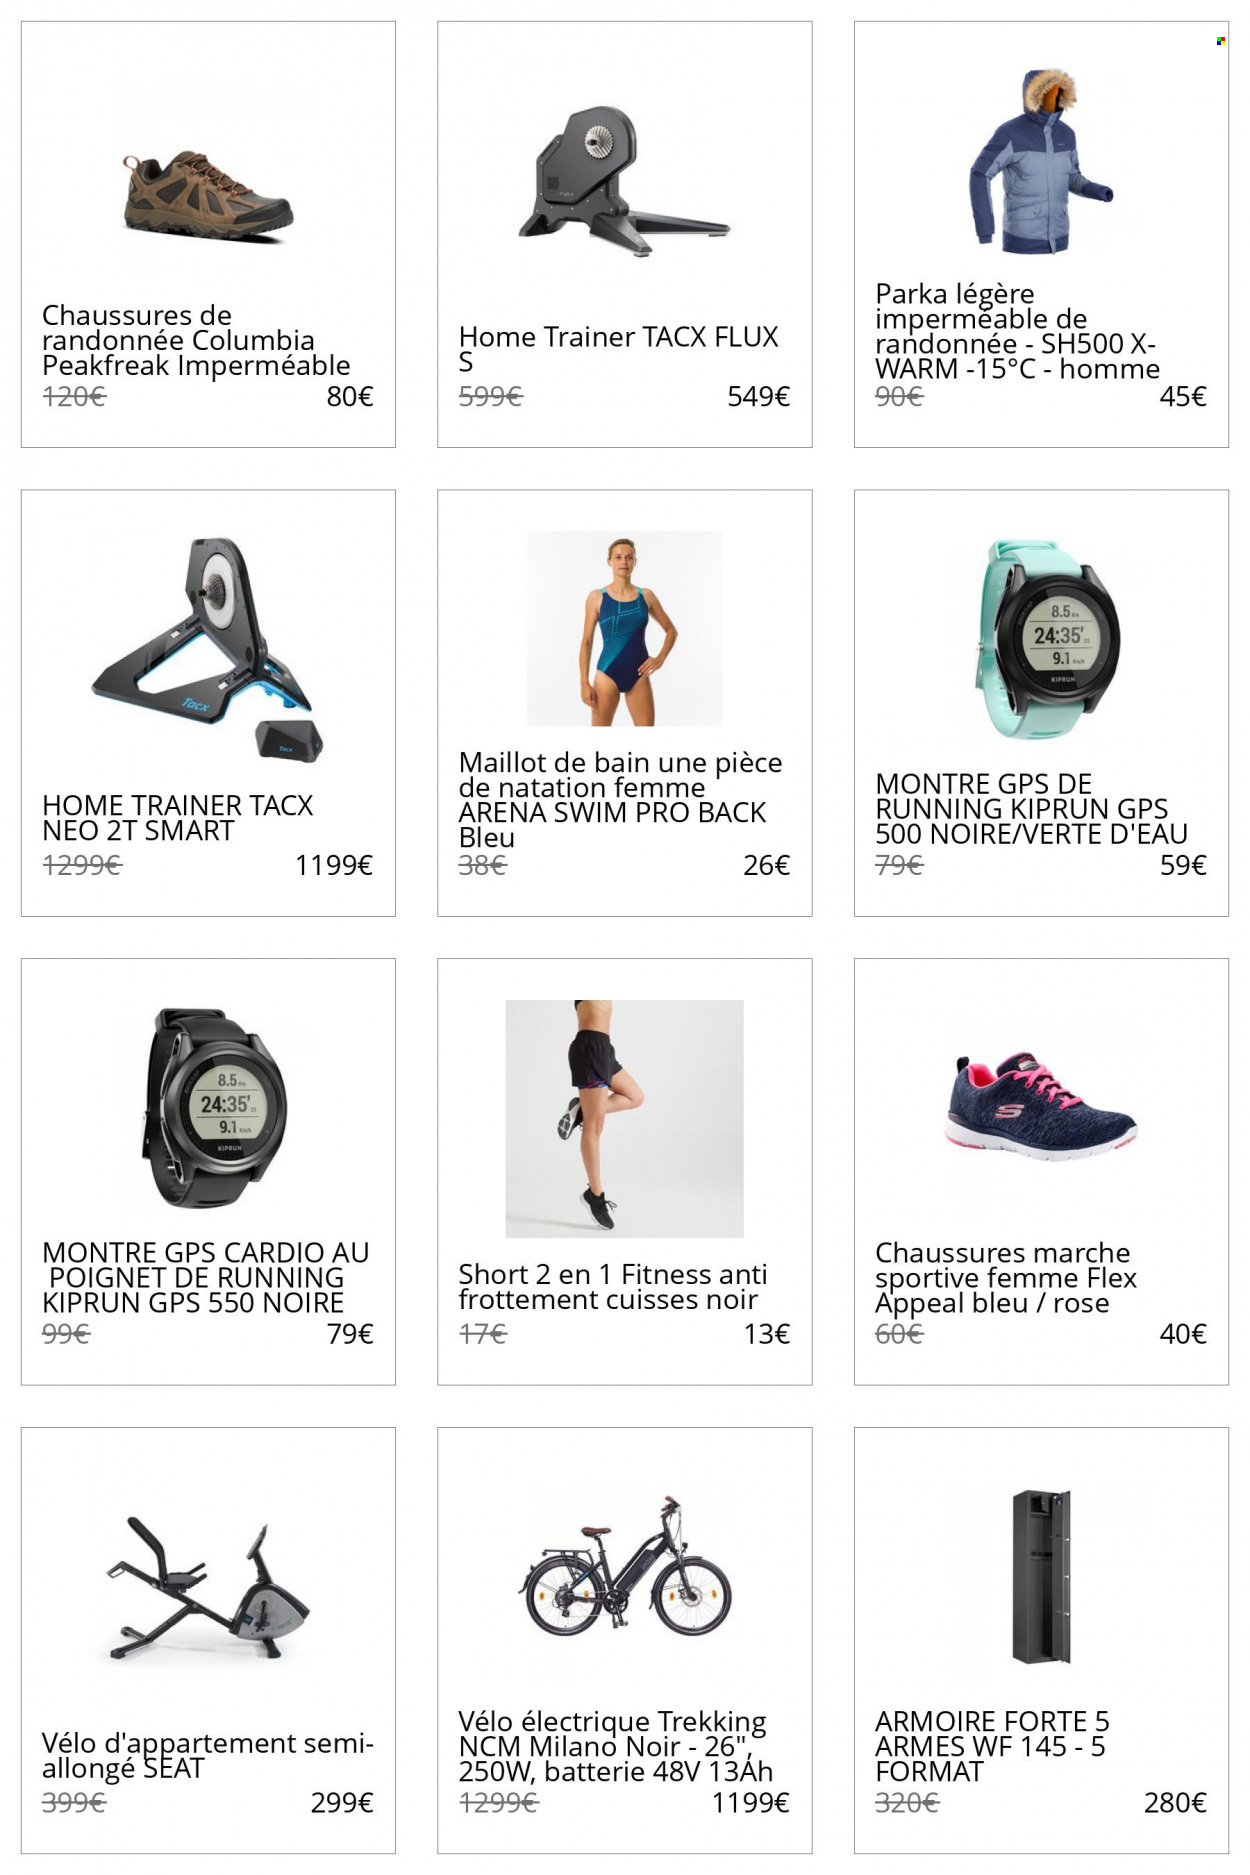 thumbnail - Catalogue Decathlon - Produits soldés - Columbia, Arena, montre, vélo électrique, parka, shorts, maillot de bain, vélo d'appartement. Page 1.